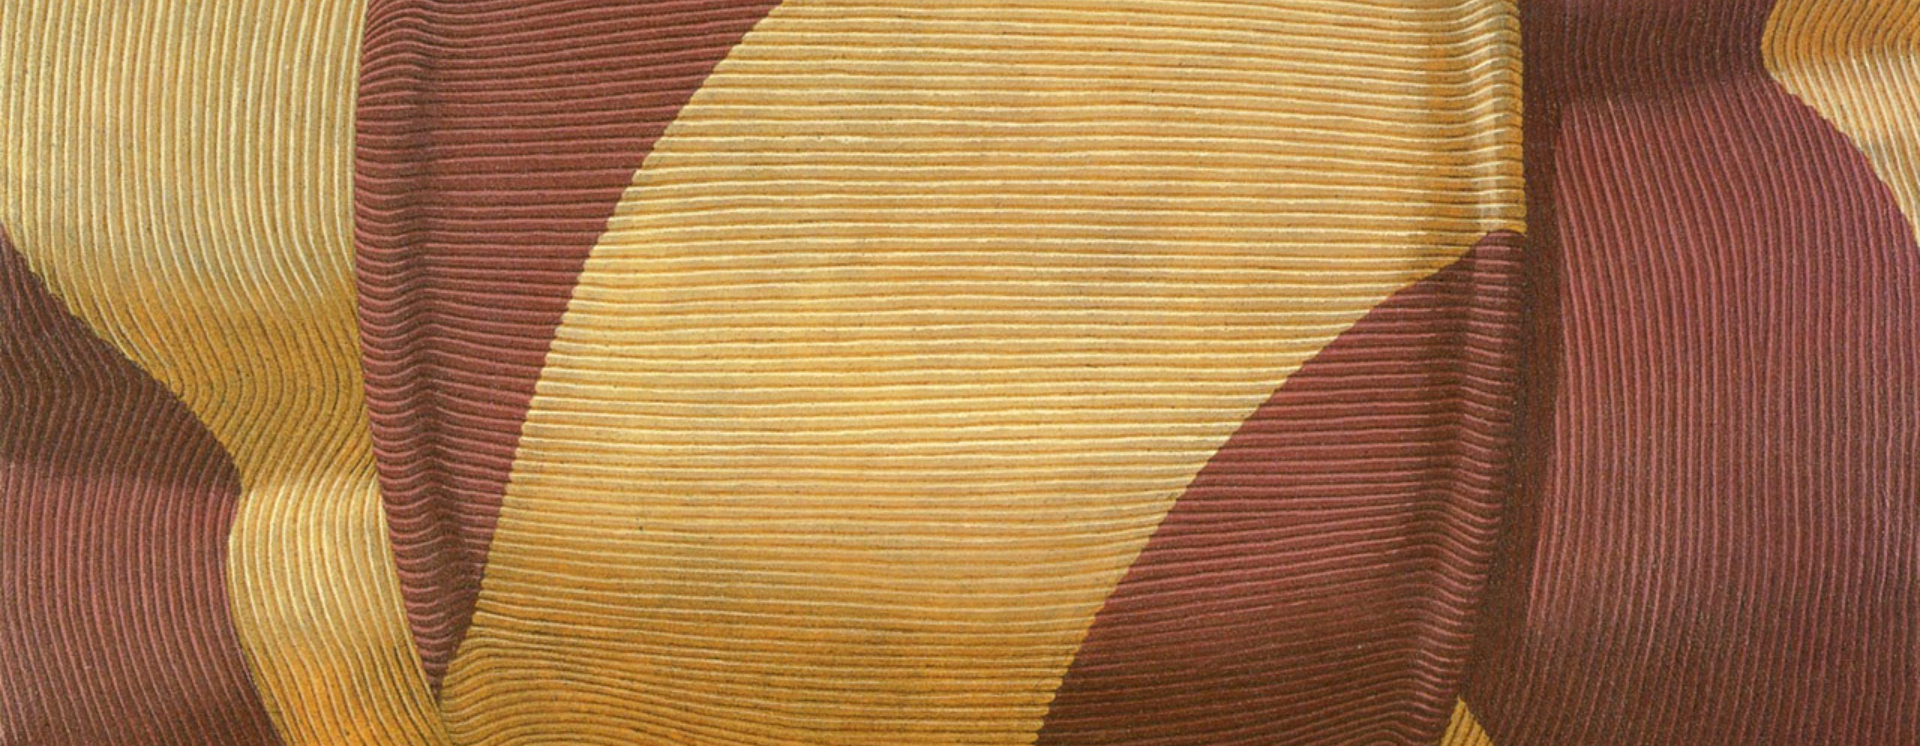 Domenico Gnoli (Roma 1933 - New York 1970) Bow tie, 1969 acrilico e sabbia su tela, 140 x 160 cm Collezione Luigi e Peppino Agrati - Intesa Sanpaolo